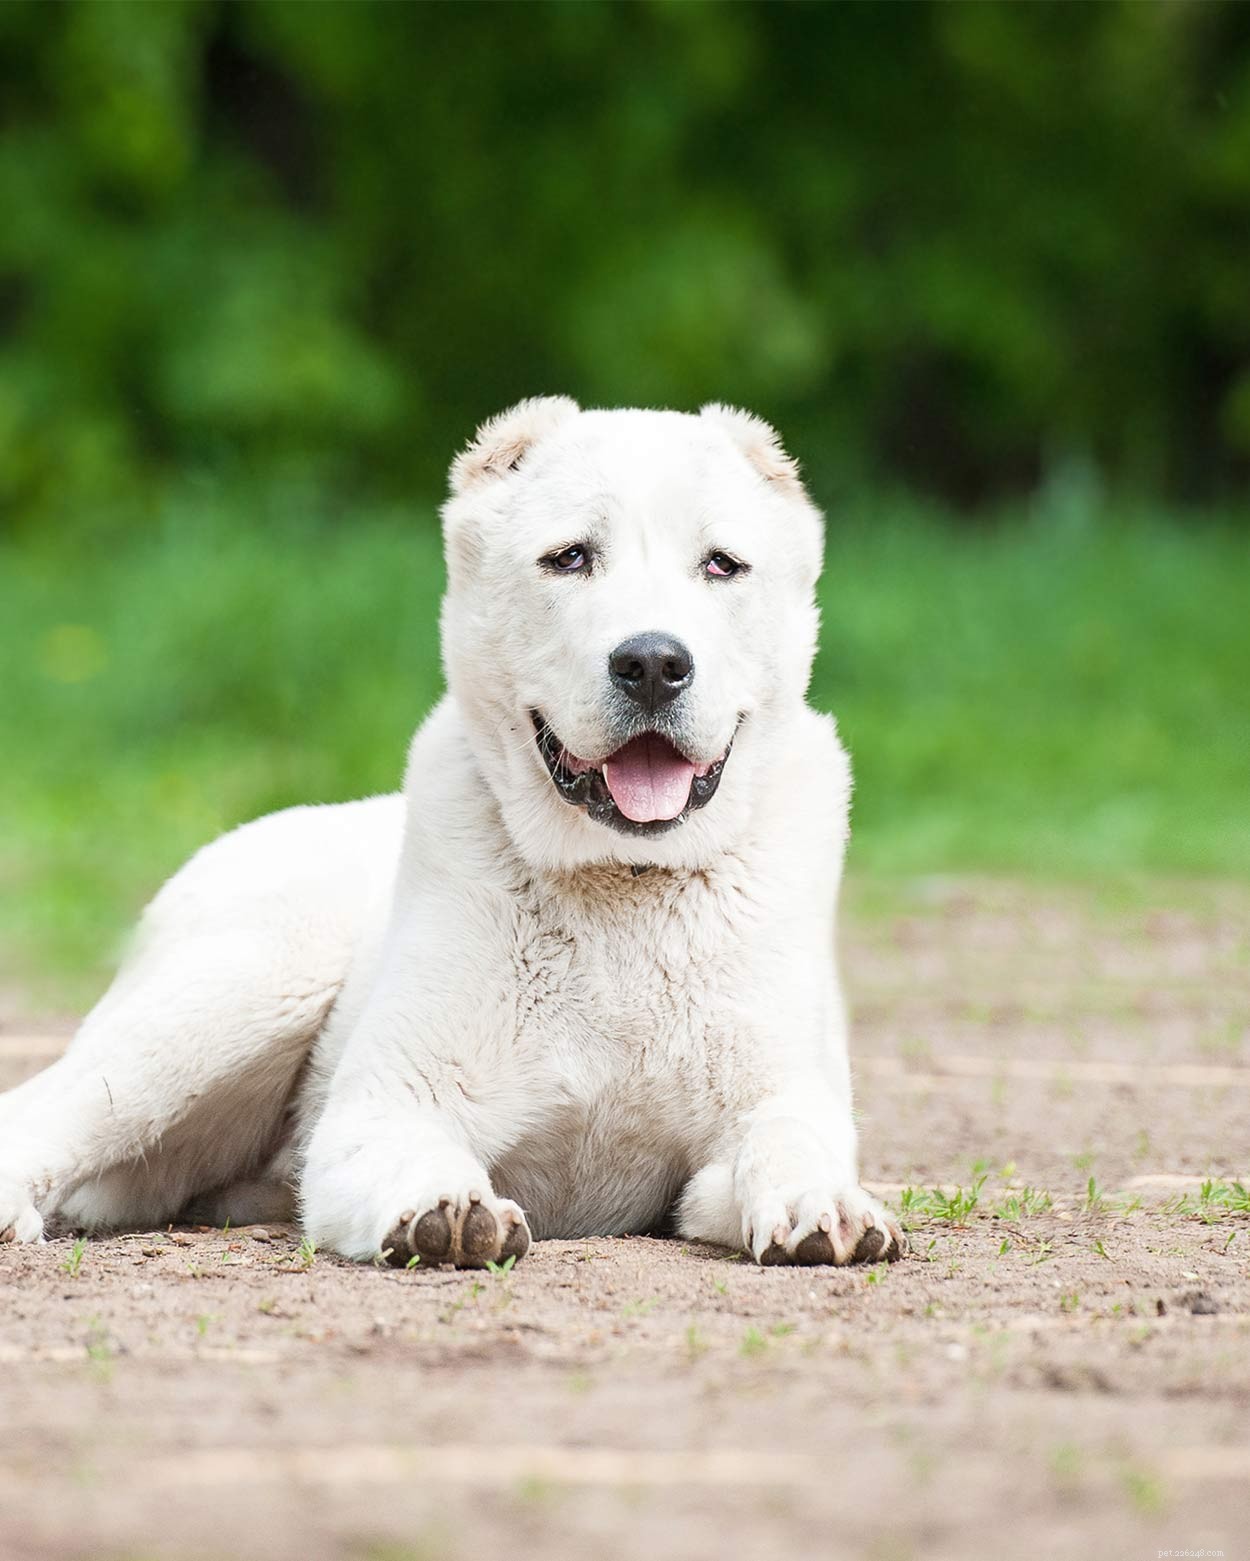 Russische hondenrassen – de geweldige pups die uit Rusland kwamen